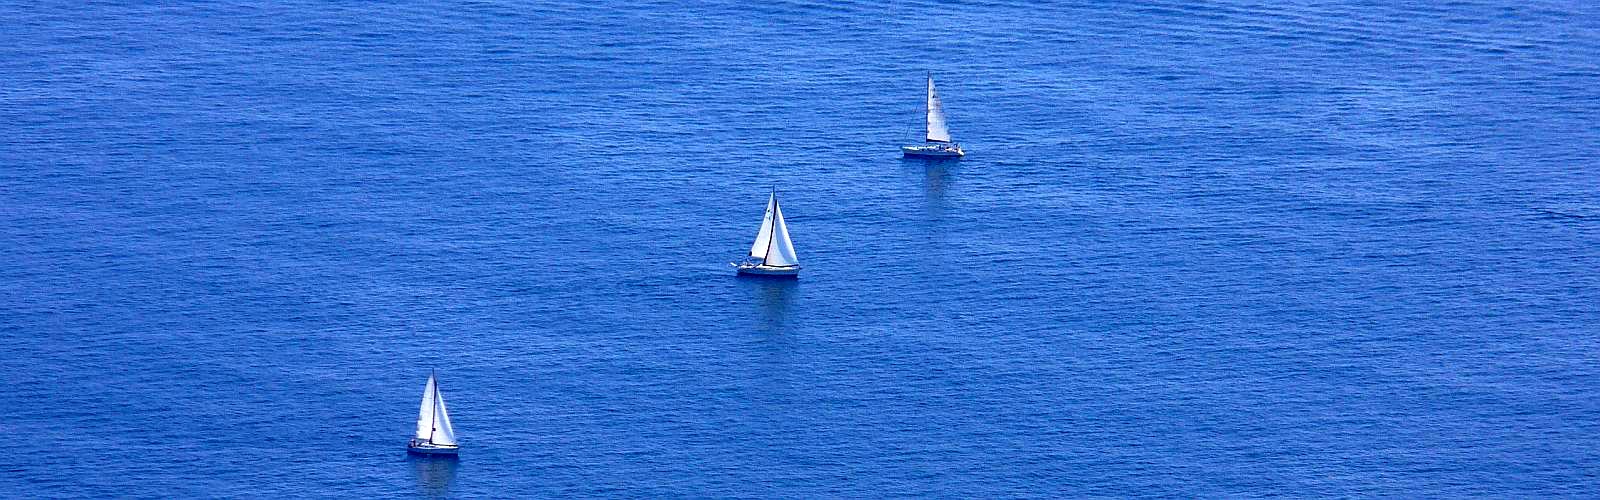 Cinque Terre - Water sports in Cinque Terre